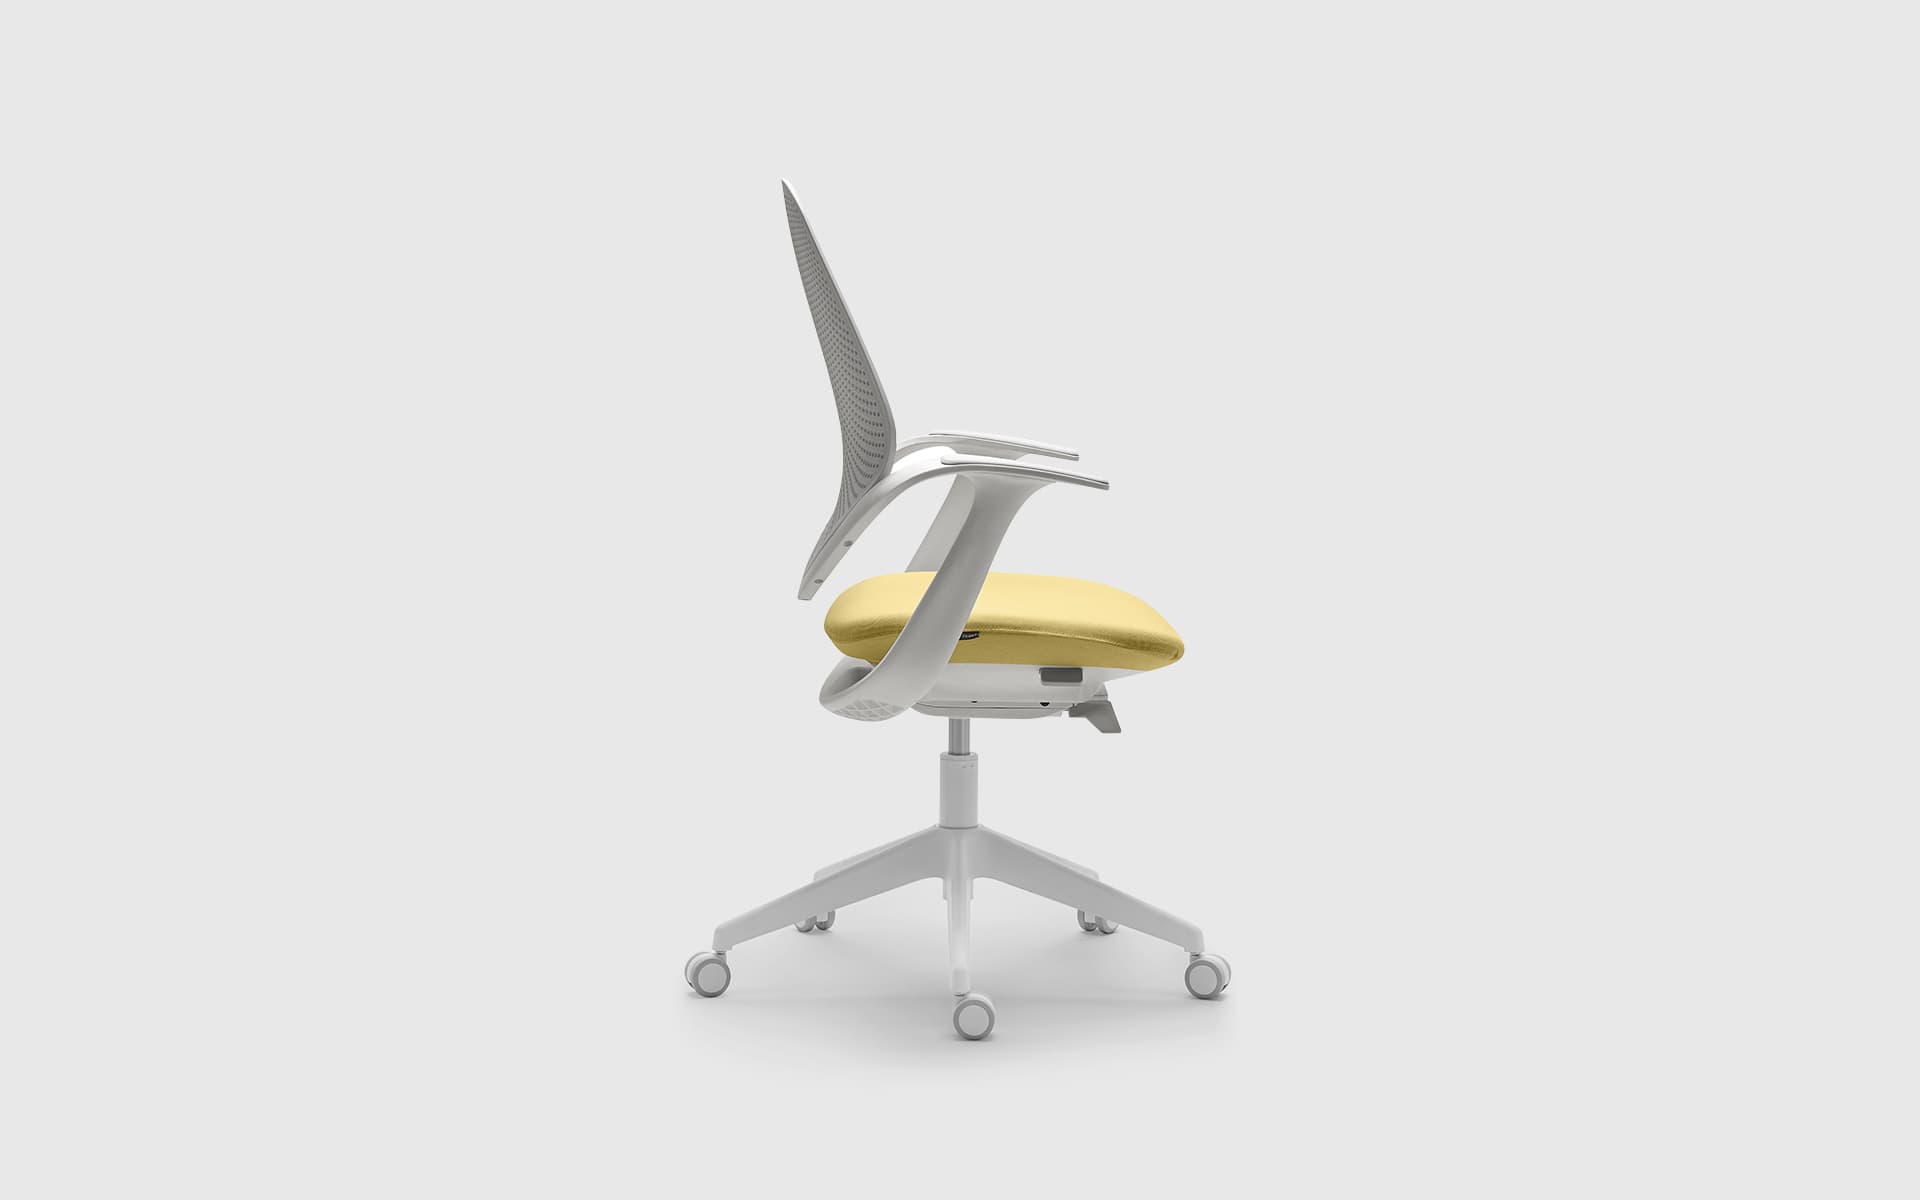 Seitenaufnahme eines Forma 5 Flow Bürostuhls von ITO Design mit gepolsterter Sitzfläche in Gelb, Rücken- und Armlehnen in Weiß.